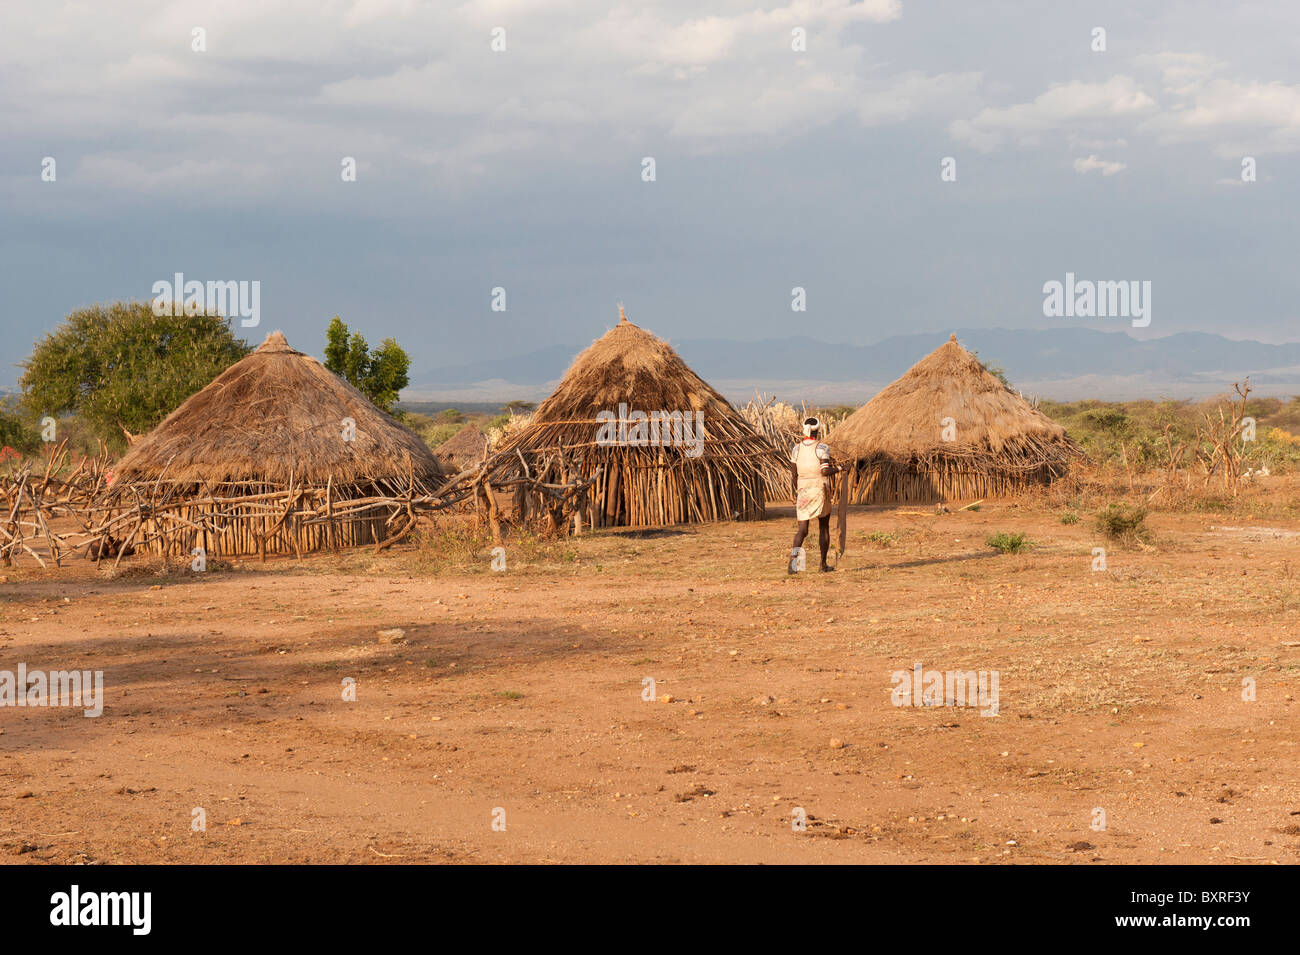 Hamar, village de la vallée de la rivière Omo, dans le sud de l'Éthiopie Afrique Banque D'Images